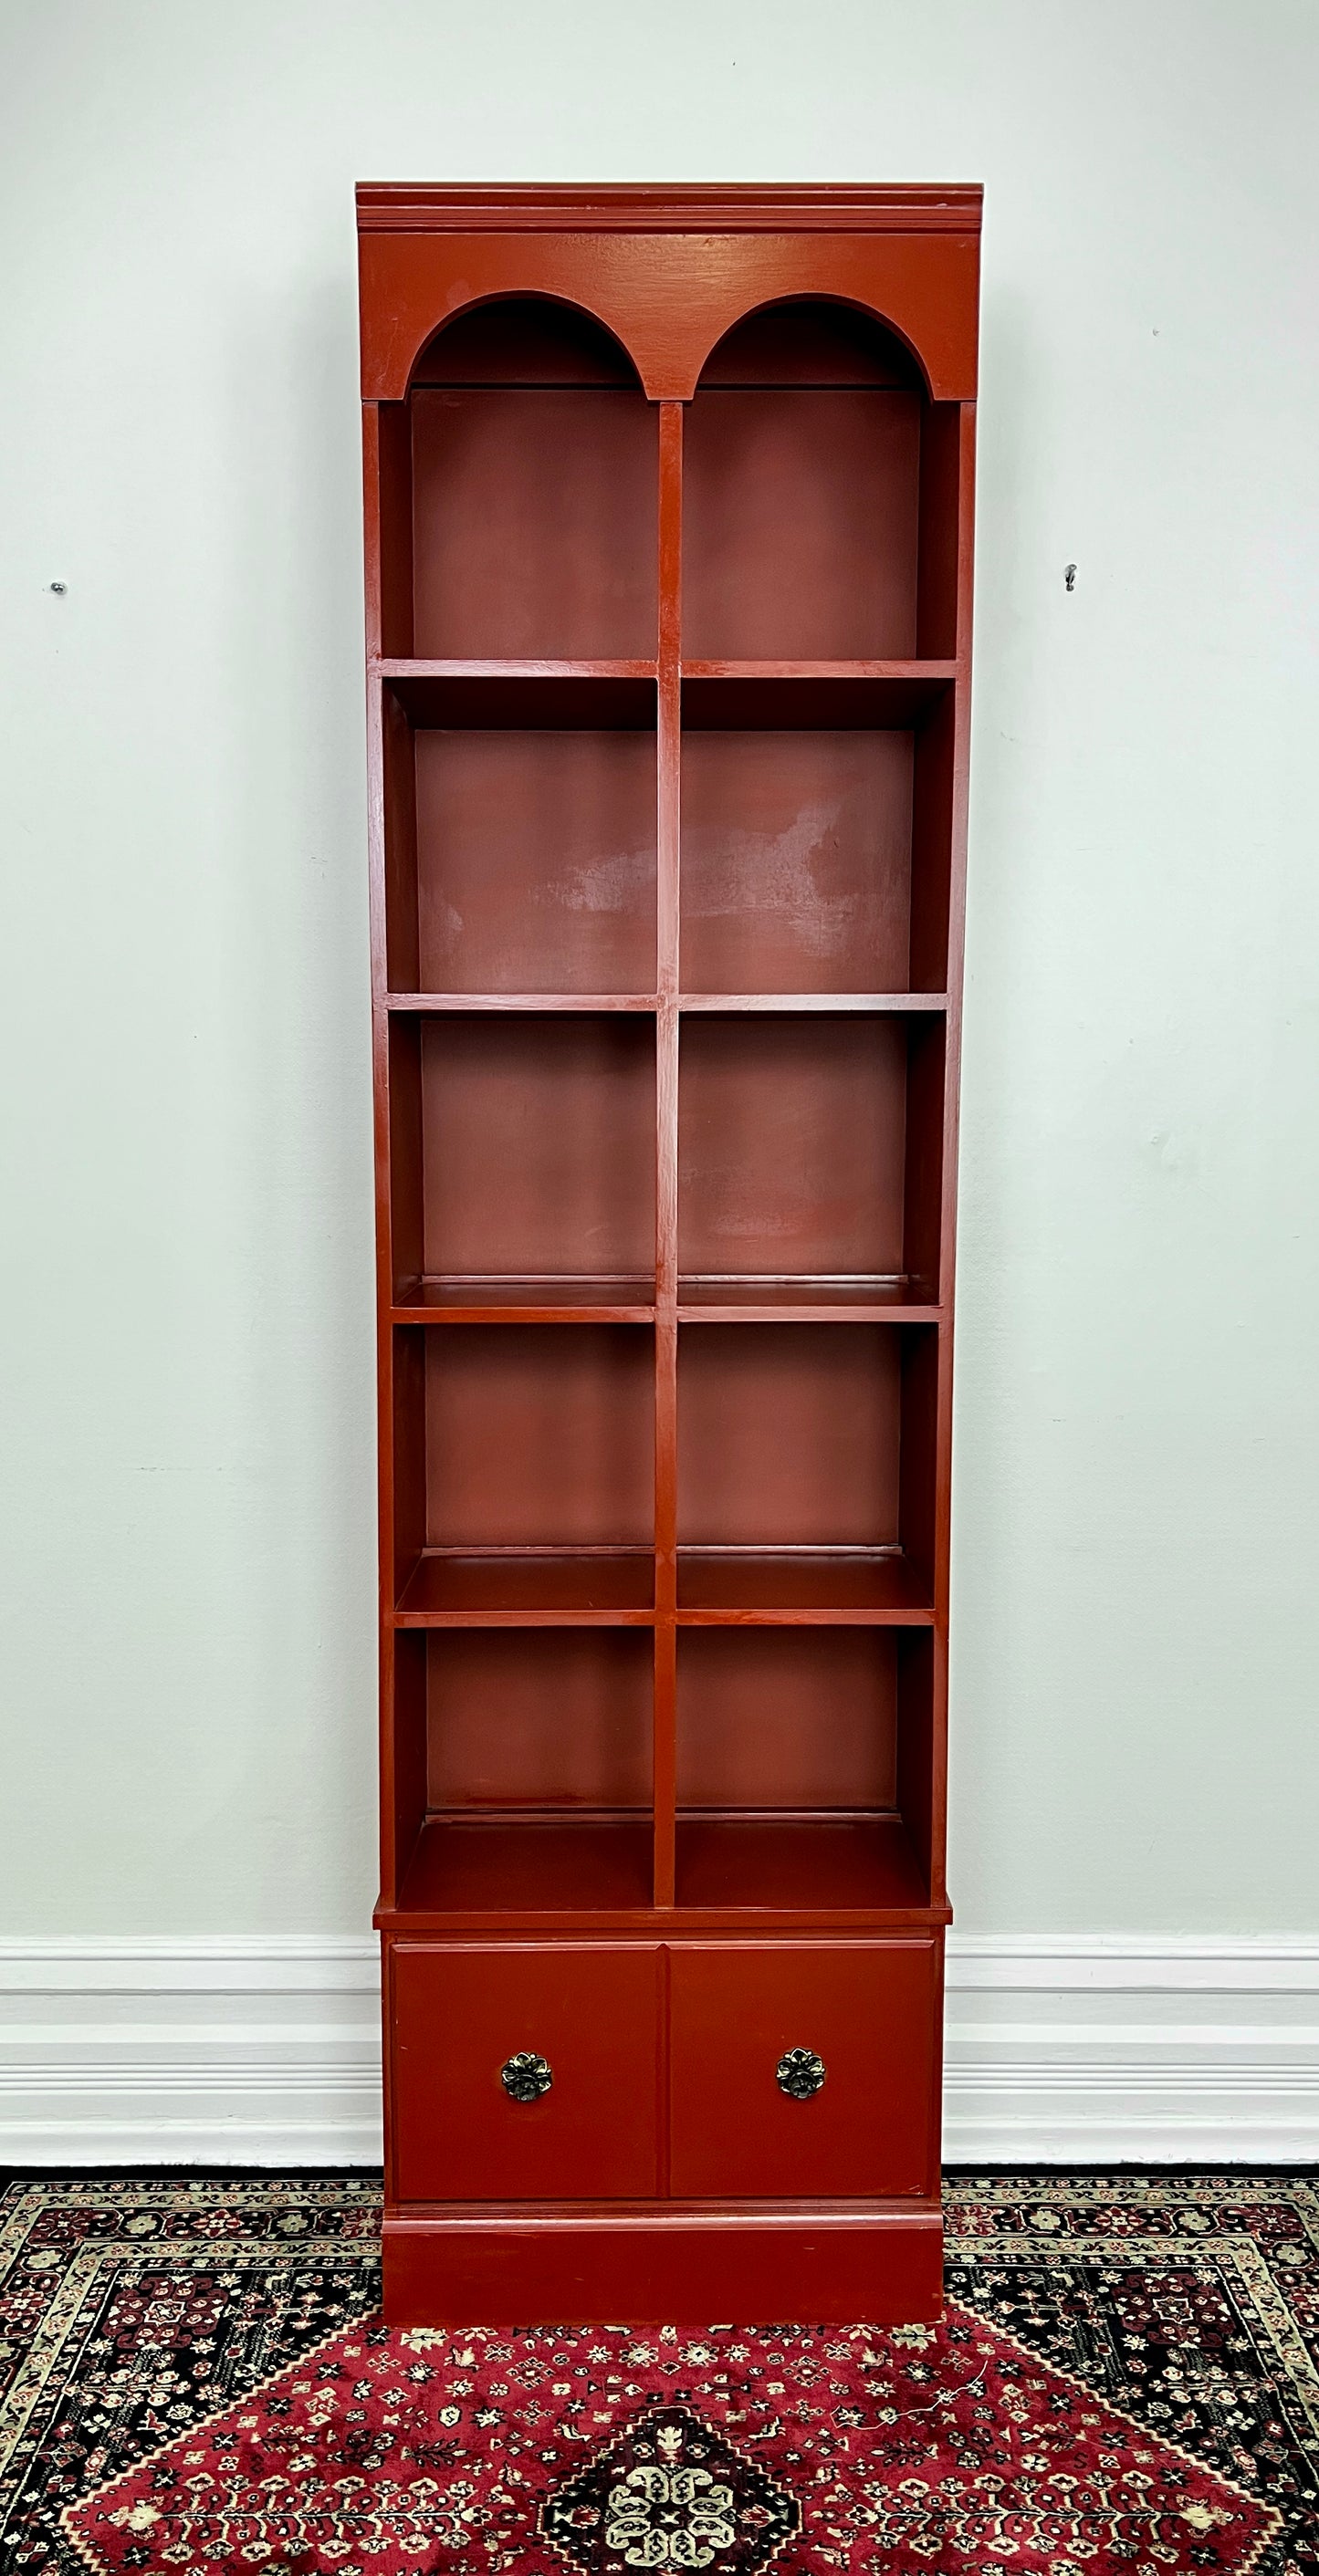 The Redmond Shelf